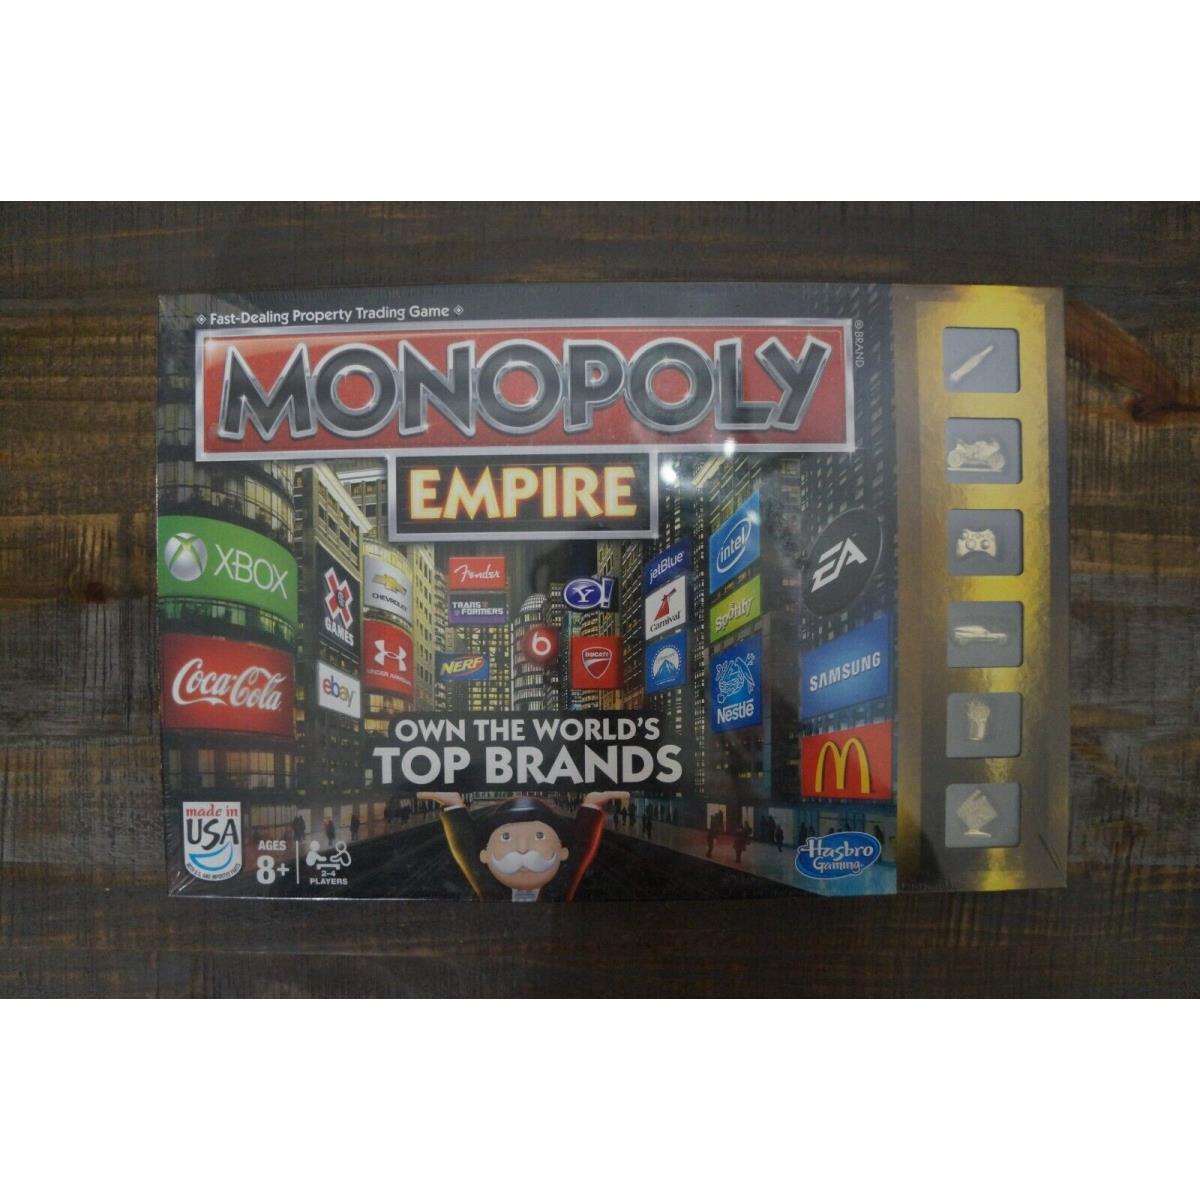 Monopoly Empire Edition Board Game Rare Gold